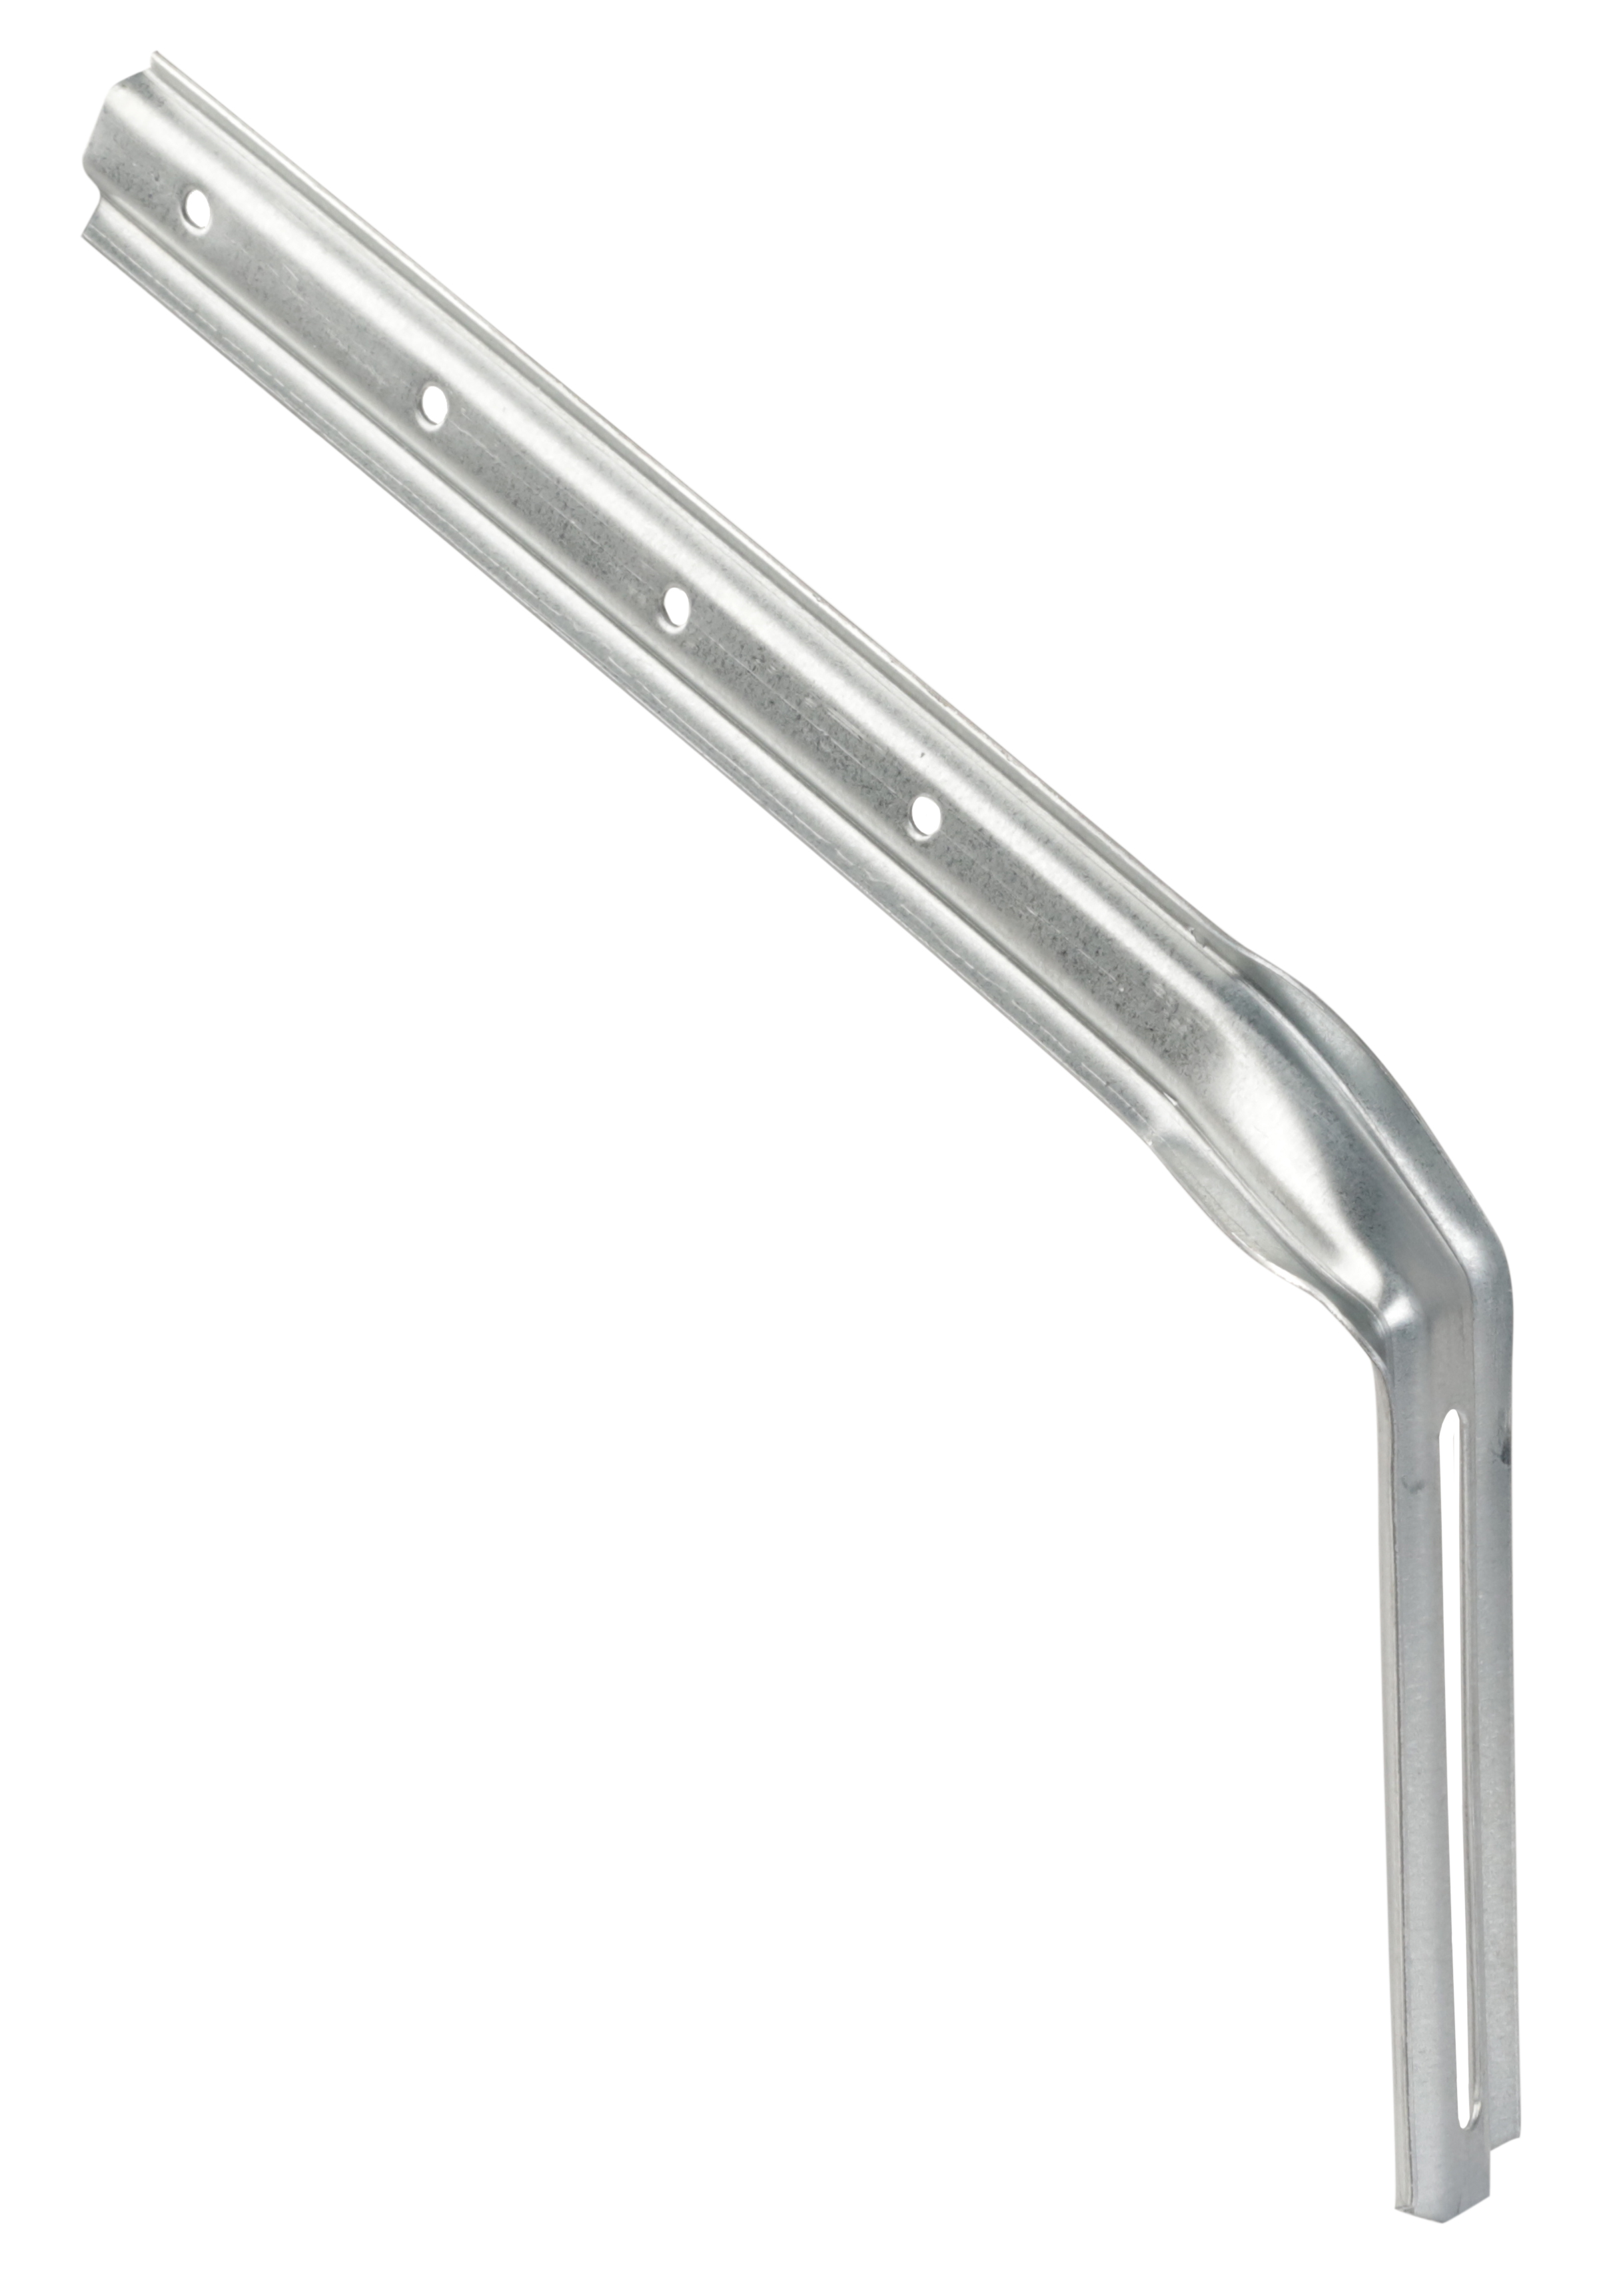 Gambo del gancio 250 mm, nervato, acciaio zincato